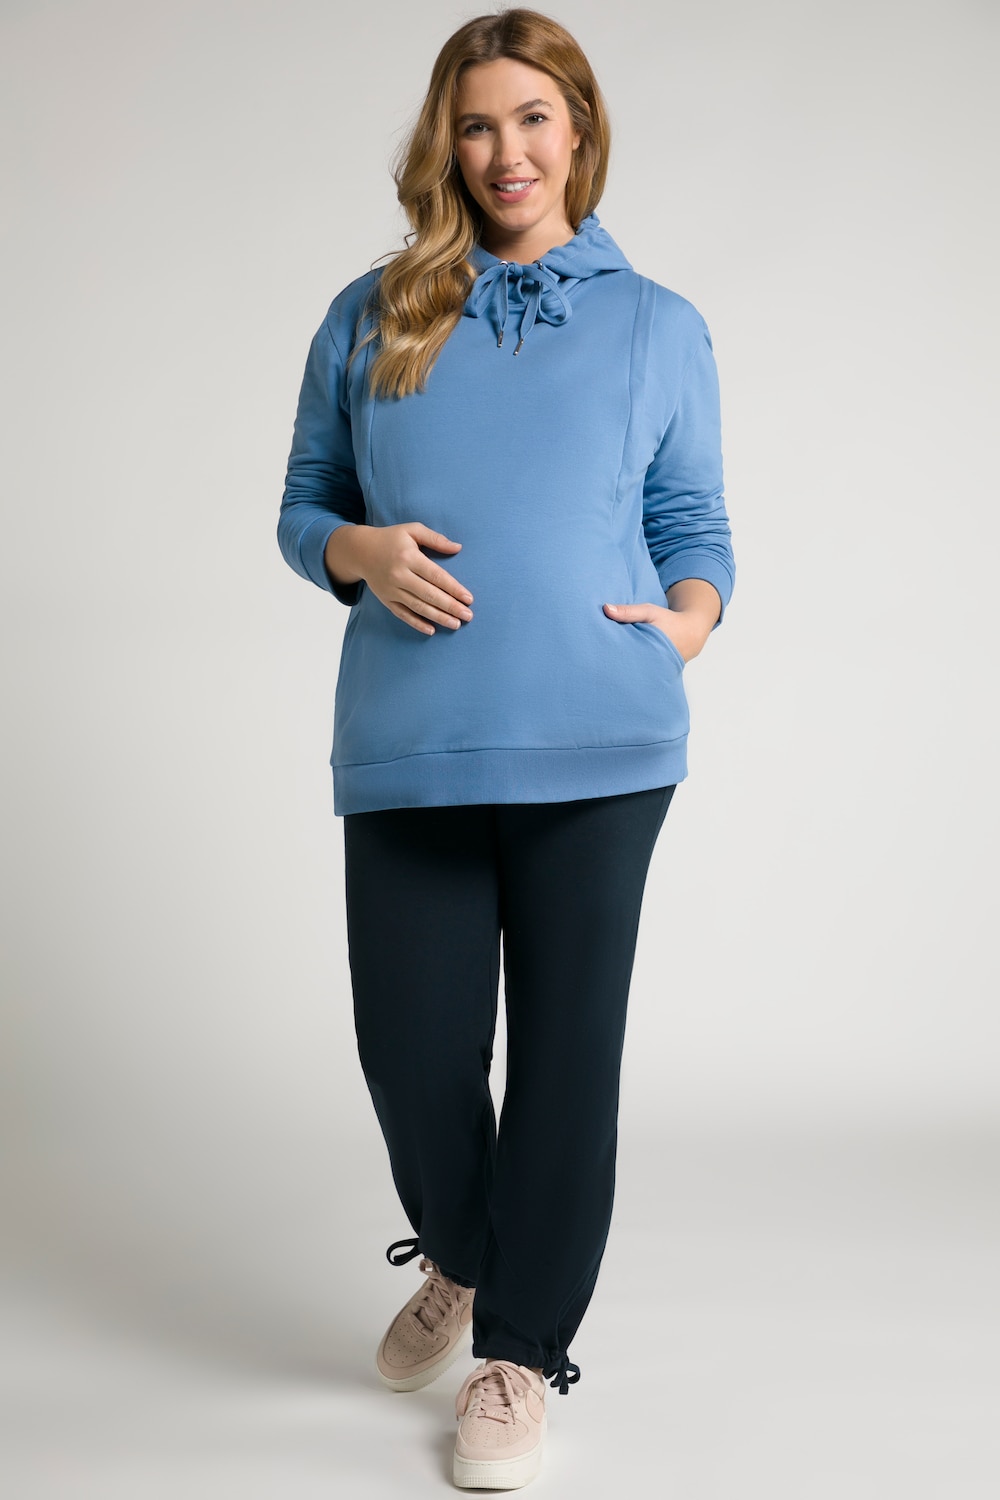 Plus Size Bellieva Nursing Friendly Hooded Sweatshirt, Woman, blue, size: 20/22, cotton, Ulla Popken